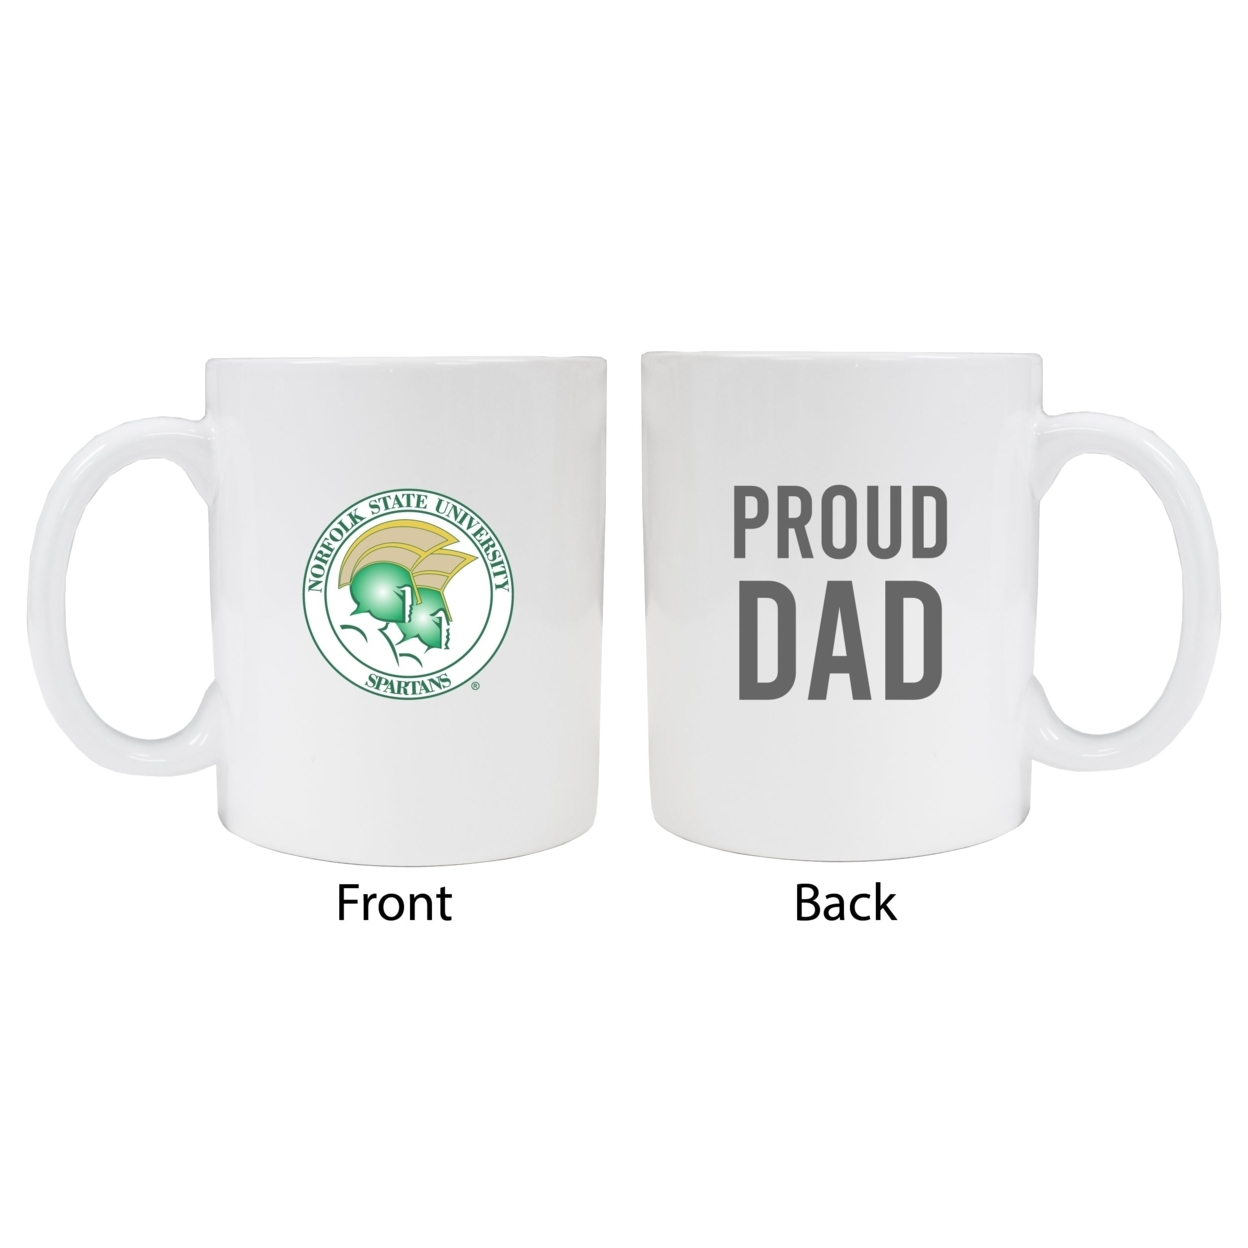 Norfolk State University Proud Dad Ceramic Coffee Mug - White